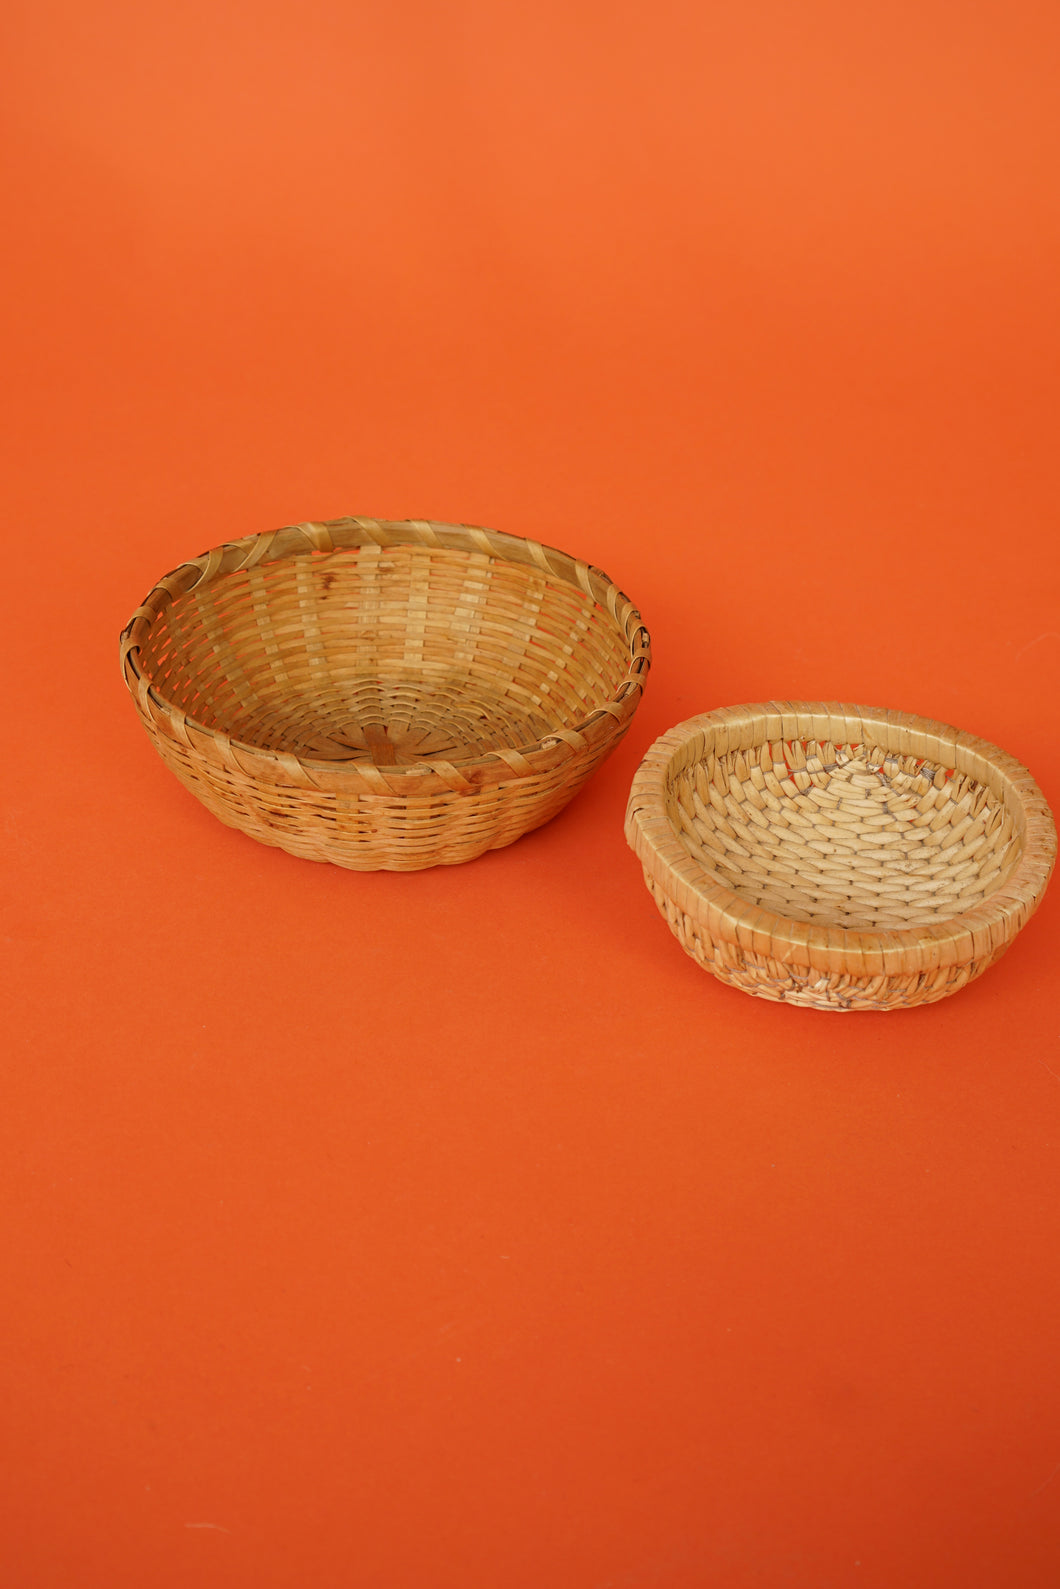 Assortment of rattan bowls